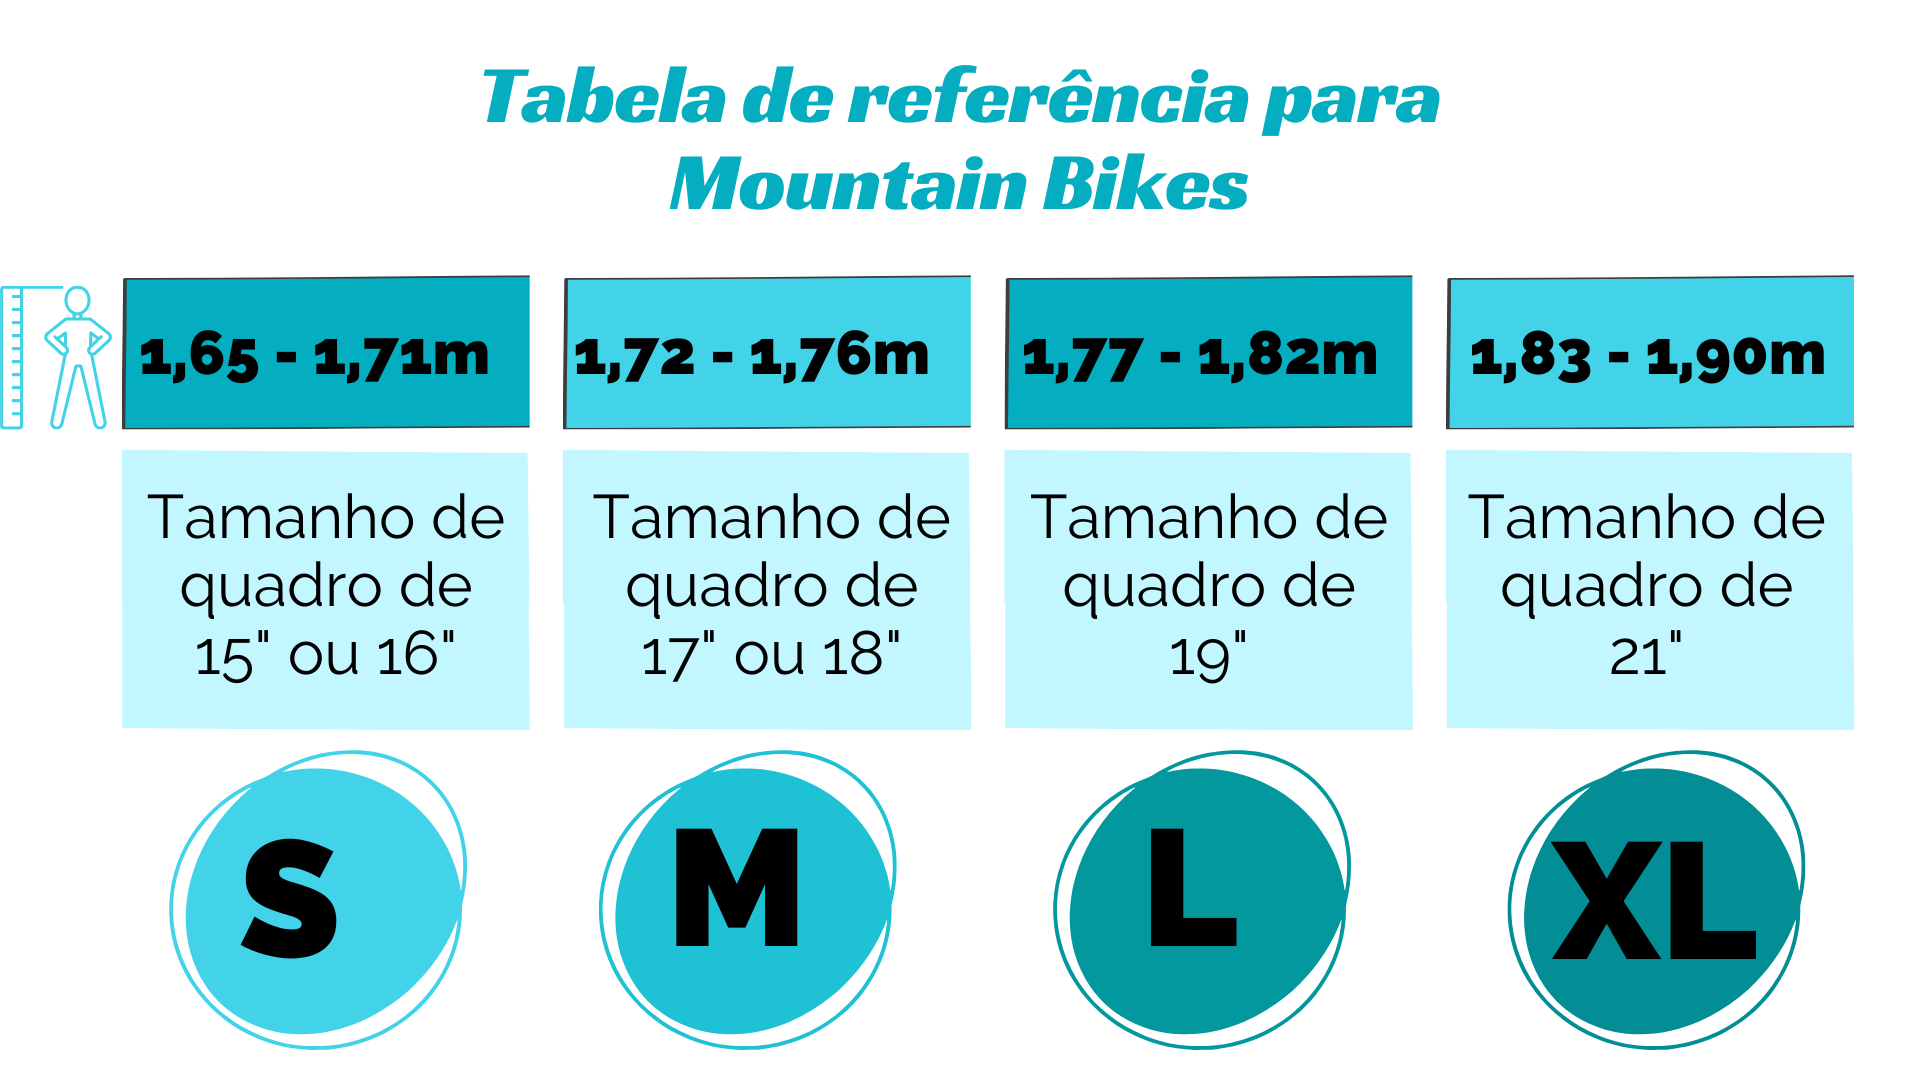 Tabela de referência para tamanho de quadro para mountain bikes.